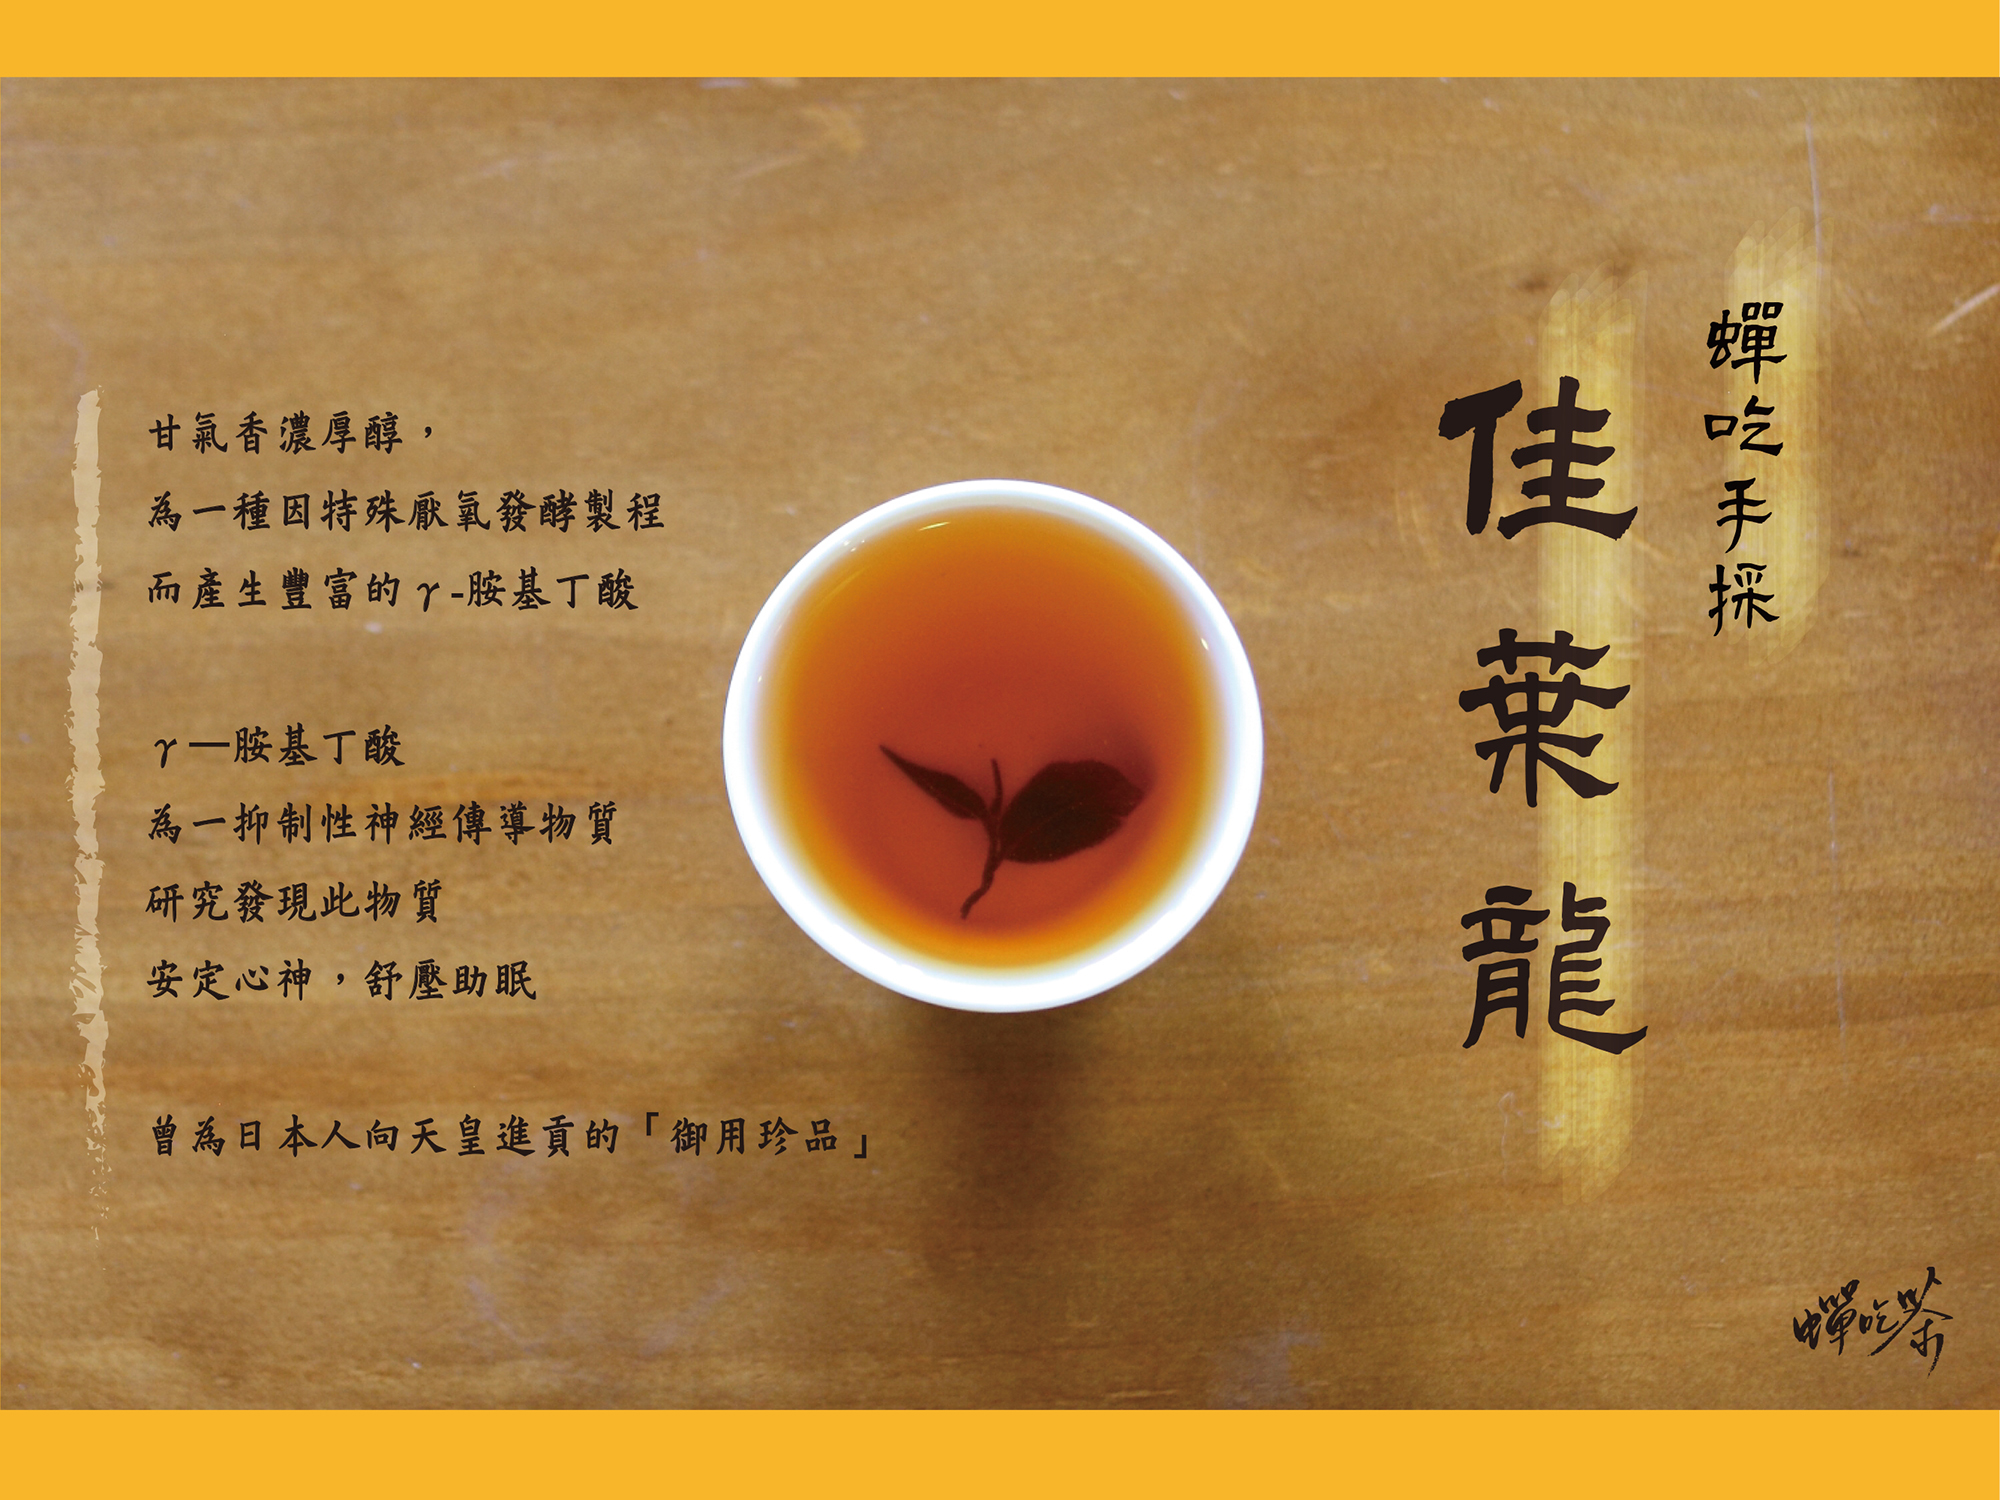 所謂佳葉龍茶（GABA–tea）就是一種含高量γ—胺基丁酸（γ—Aminobutyric acid）的天然茶葉新製品，γ—胺基丁酸英文簡稱GABA，所以佳葉龍茶又稱GABA茶，日本人習慣稱之為GABARON TEA，由於這種茶喝起來非常順口，所以日本人又稱為「順口茶」，又因喝了這種茶令人元氣十足、精神百倍、不易疲勞所以日本人又稱之為「打氣茶」，在中國大陸則稱為「金白龍茶」。佳葉龍茶具有良好的降血壓和解酒保健功效，很早就有許多研究報告證實，再加上佳葉龍茶由於加工簡易和製造成本低廉等特徵，因此在日本佳葉龍茶早已是商品化大量生產。